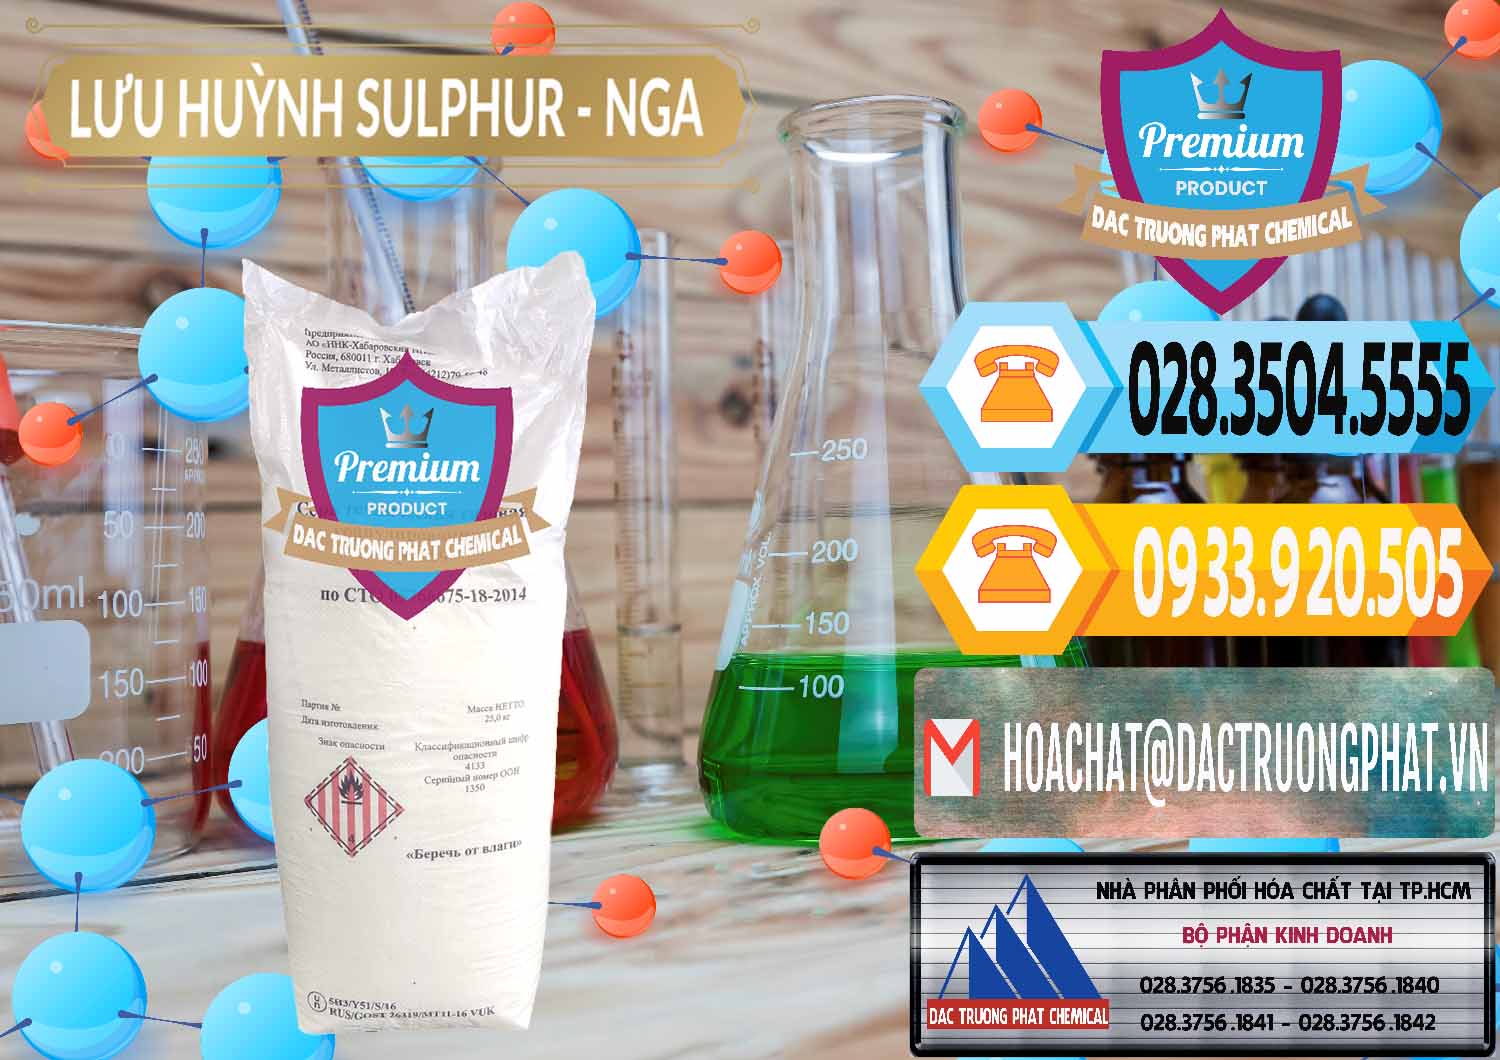 Chuyên bán và phân phối Lưu huỳnh Hạt - Sulfur Nga Russia - 0200 - Chuyên cung cấp _ phân phối hóa chất tại TP.HCM - hoachattayrua.net